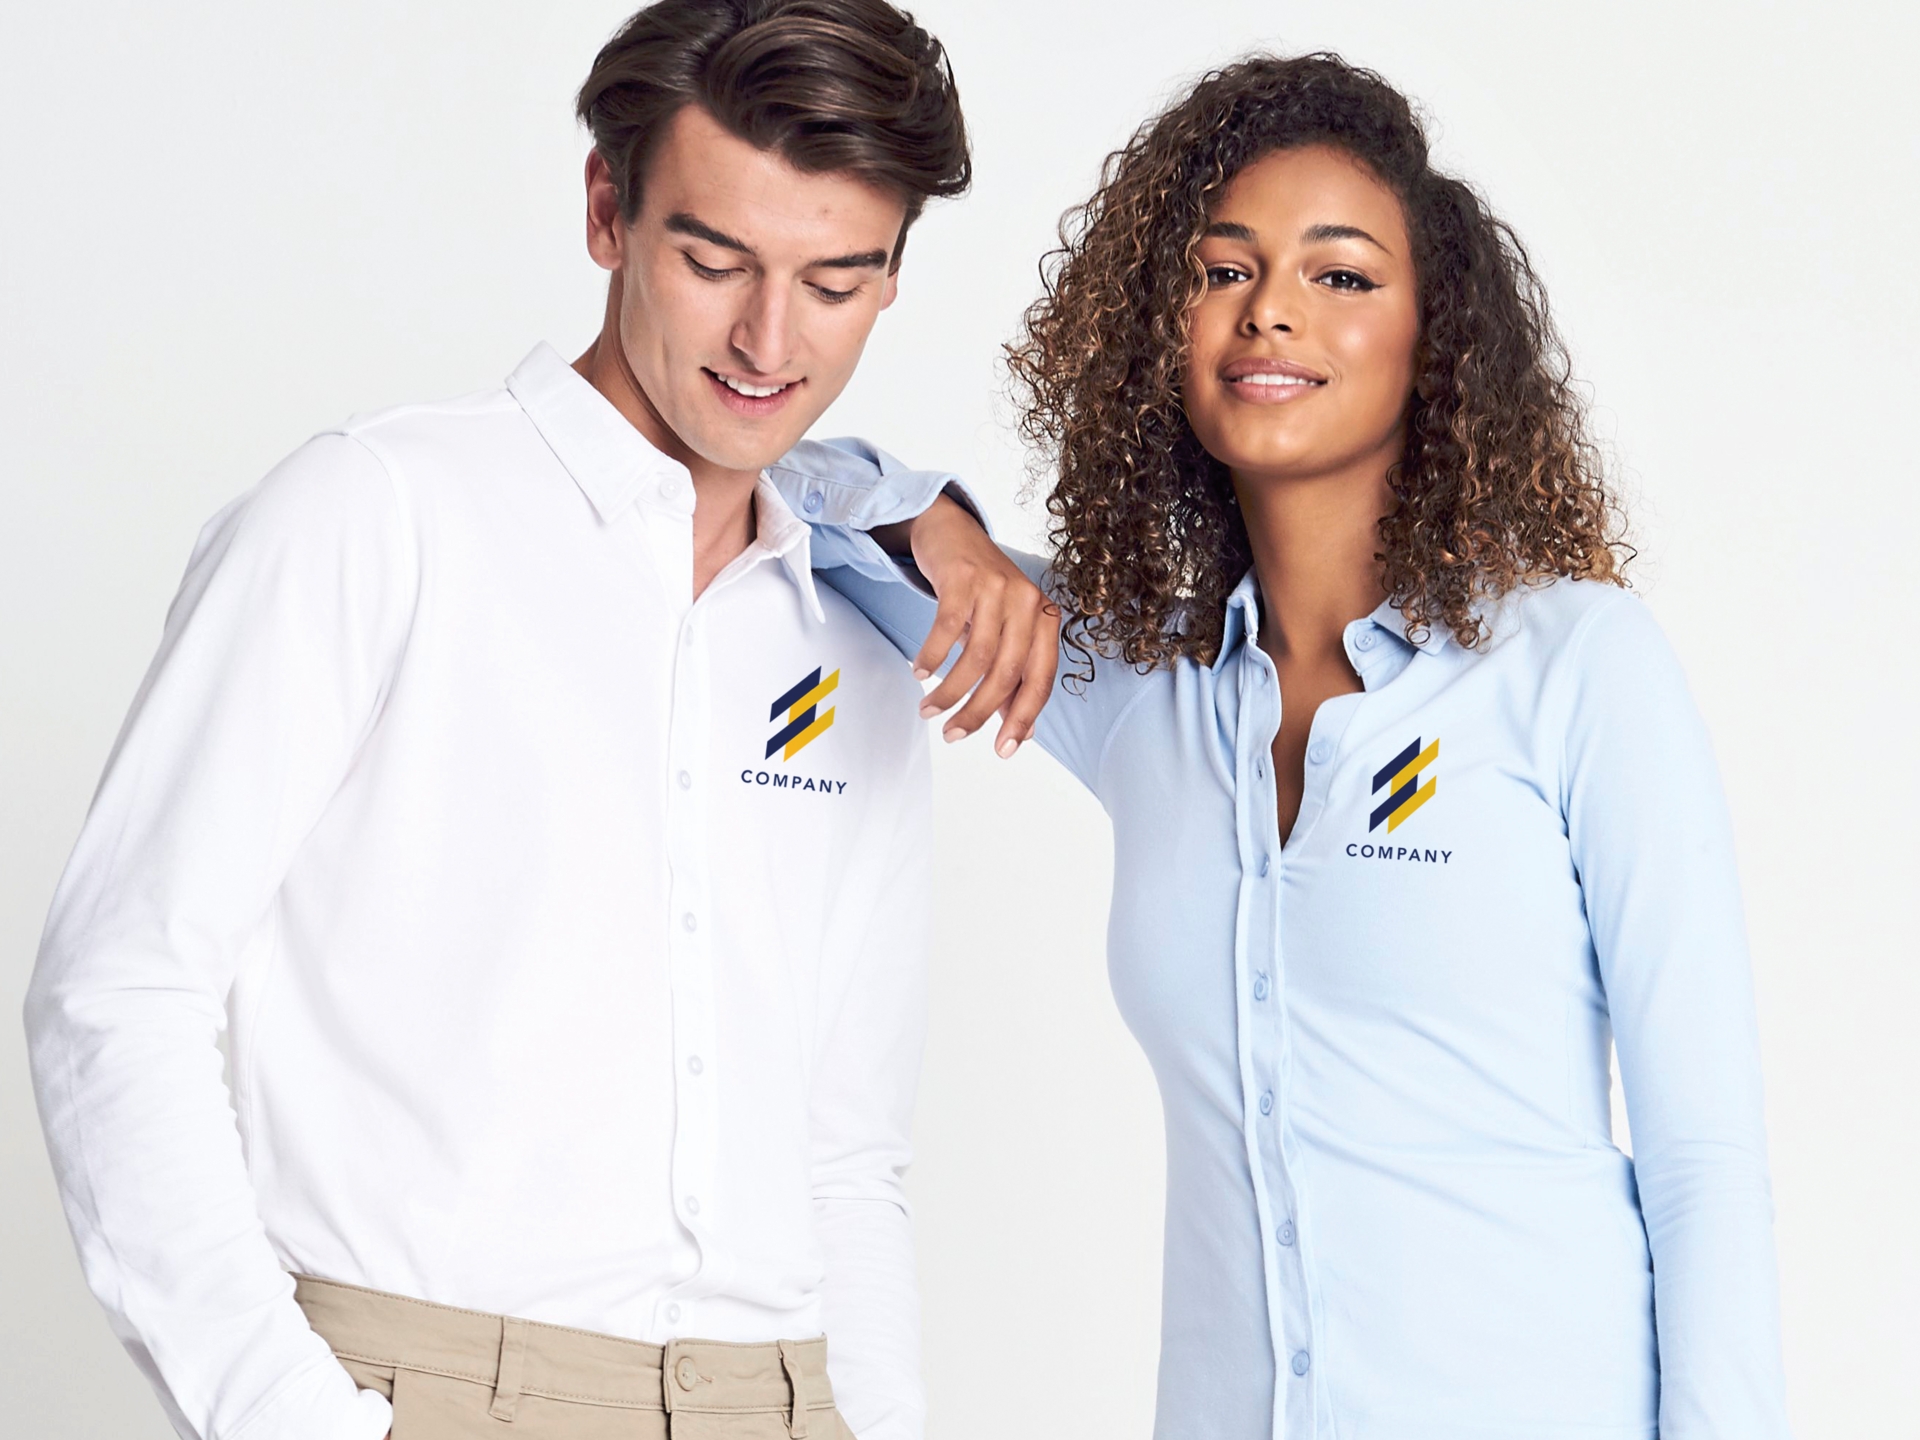 Textilveredelung Business Hemden Blusen Firmenbekleidung Wunschmotiv Firmenlogo gedruckt Eigenes Logo